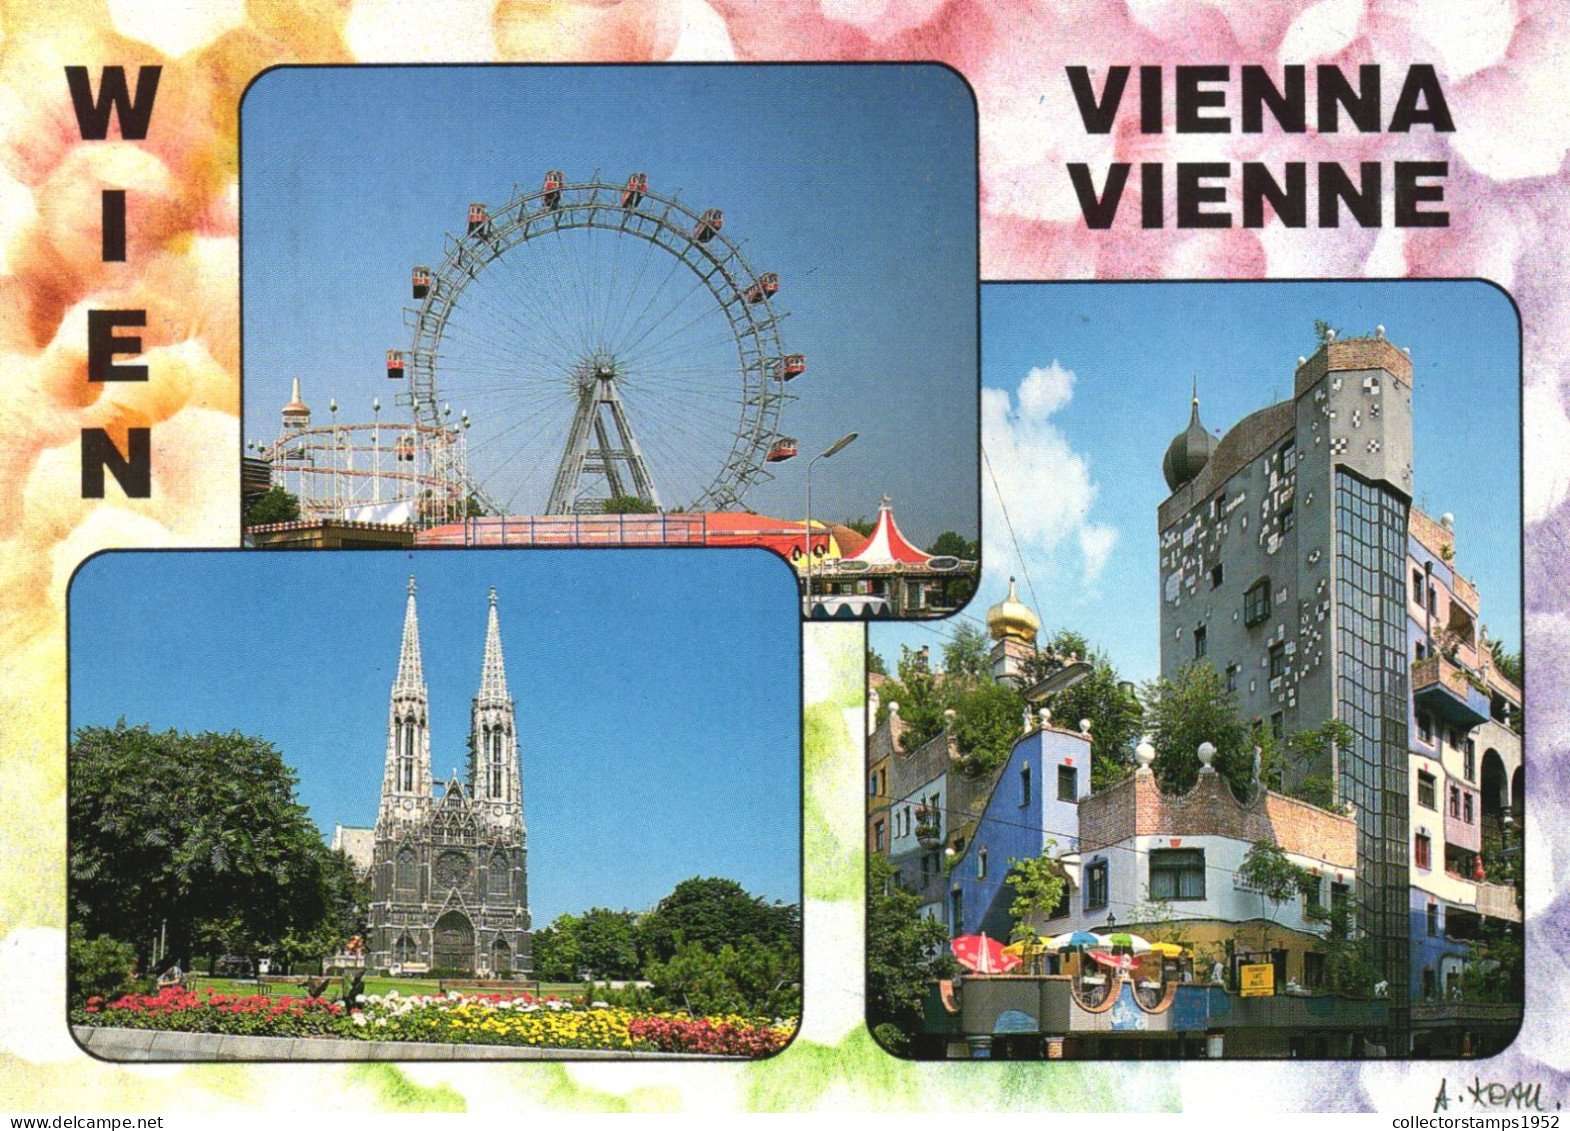 VIENNA, MULTIPLE VIEWS, GIANT WHEEL, CHURCH, PARK, ARCHITECTURE, UMBRELLA, AUSTRIA, POSTCARD - Wien Mitte